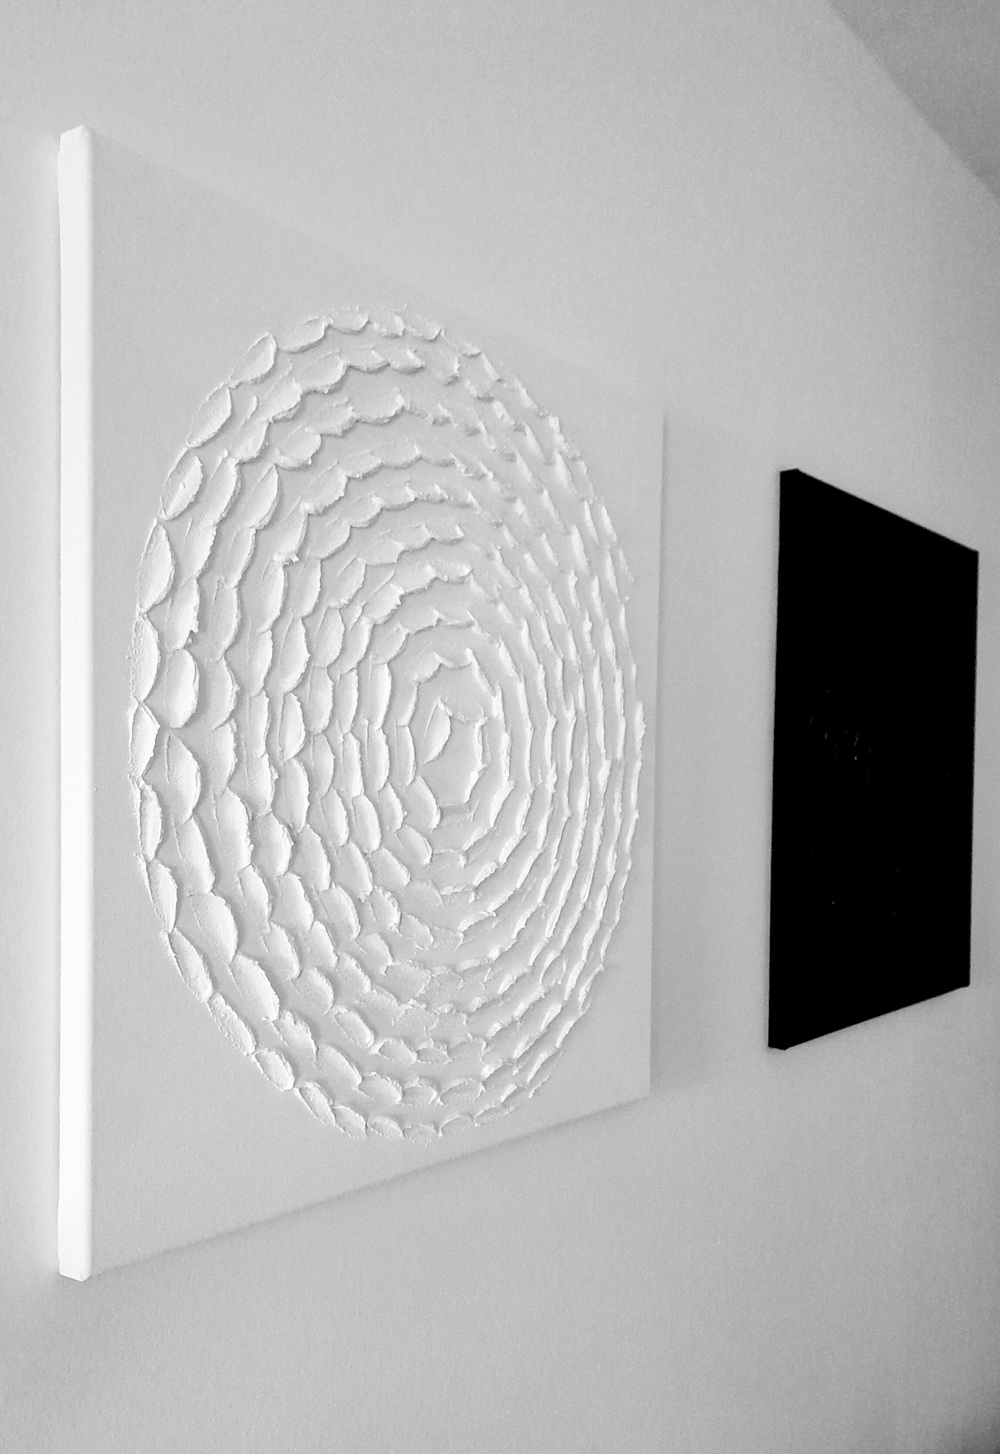 3-D Texturgemälde "Spirale" minimalistisch weiß rau 60x60 cm